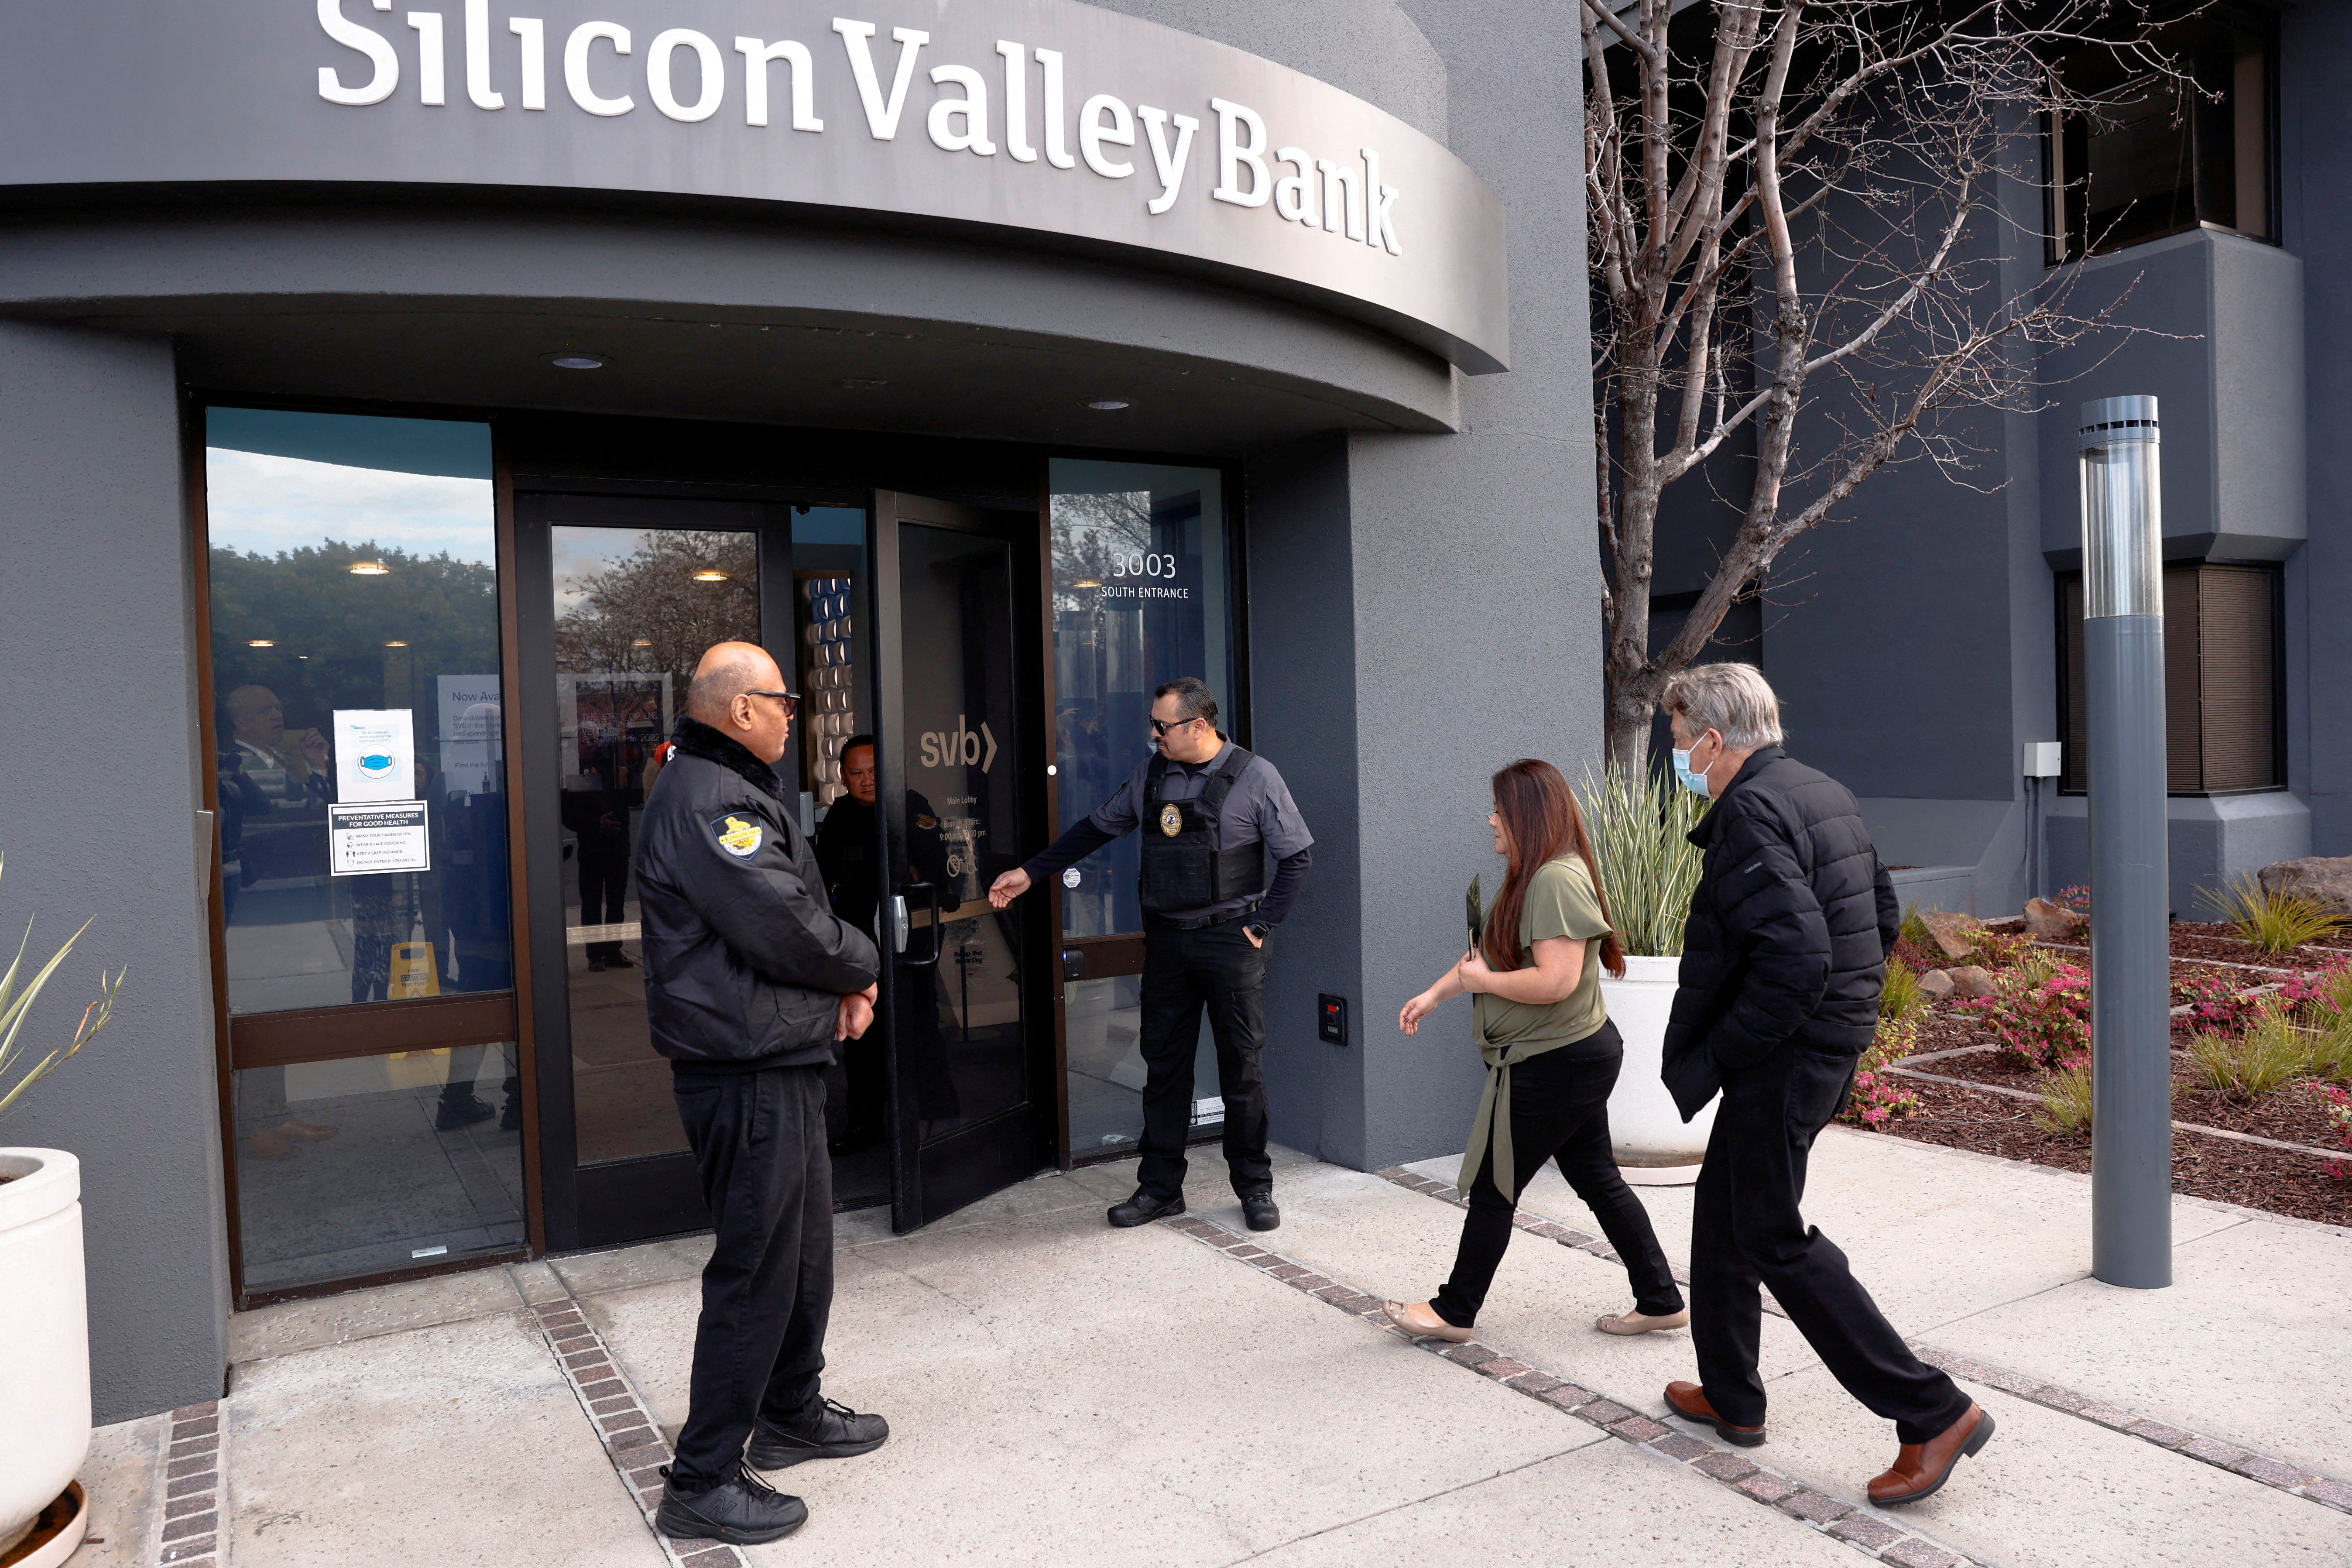 Los reguladores crearon Silicon Valley Bridge Bank a partir de SVB tras la quiebra, y esa entidad será absorbida por First Citizens. (REUTERS/Brittany Hosea-Small)